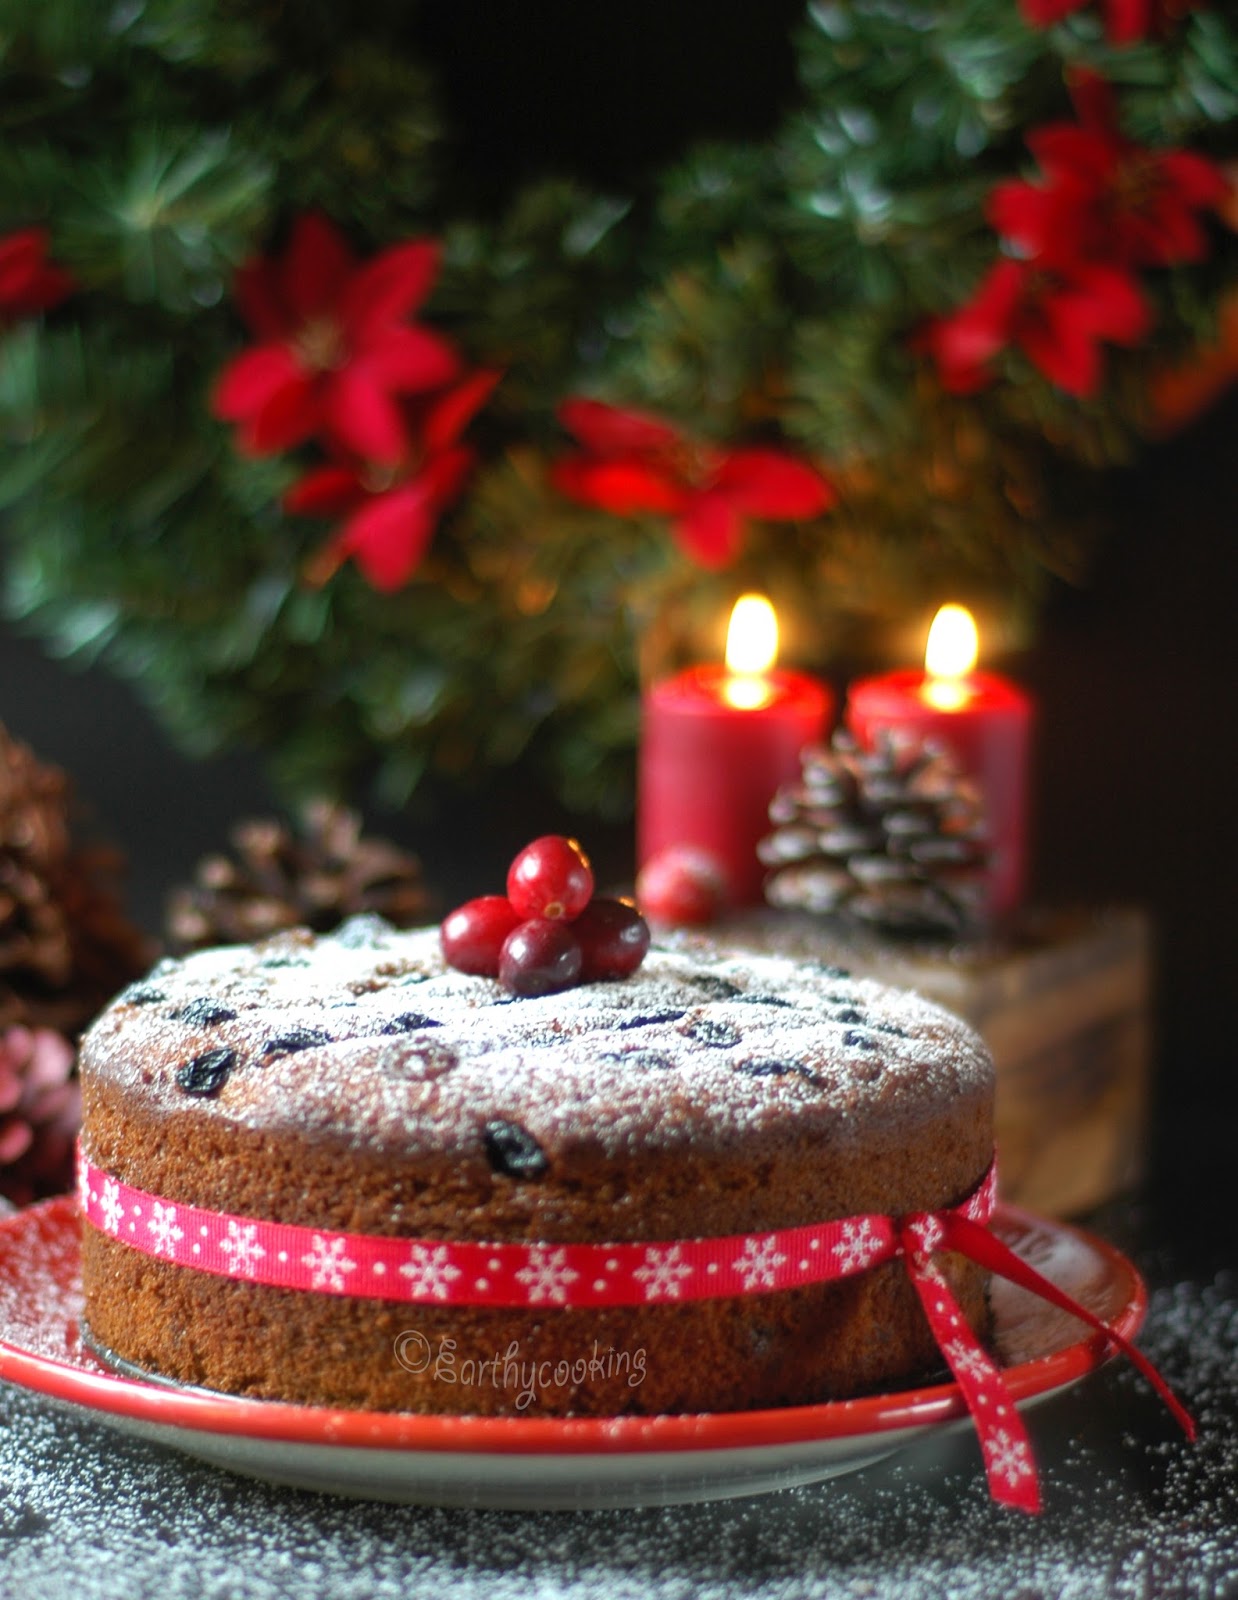 Earthycooking : Rum Soaked Christmas Fruit Cake